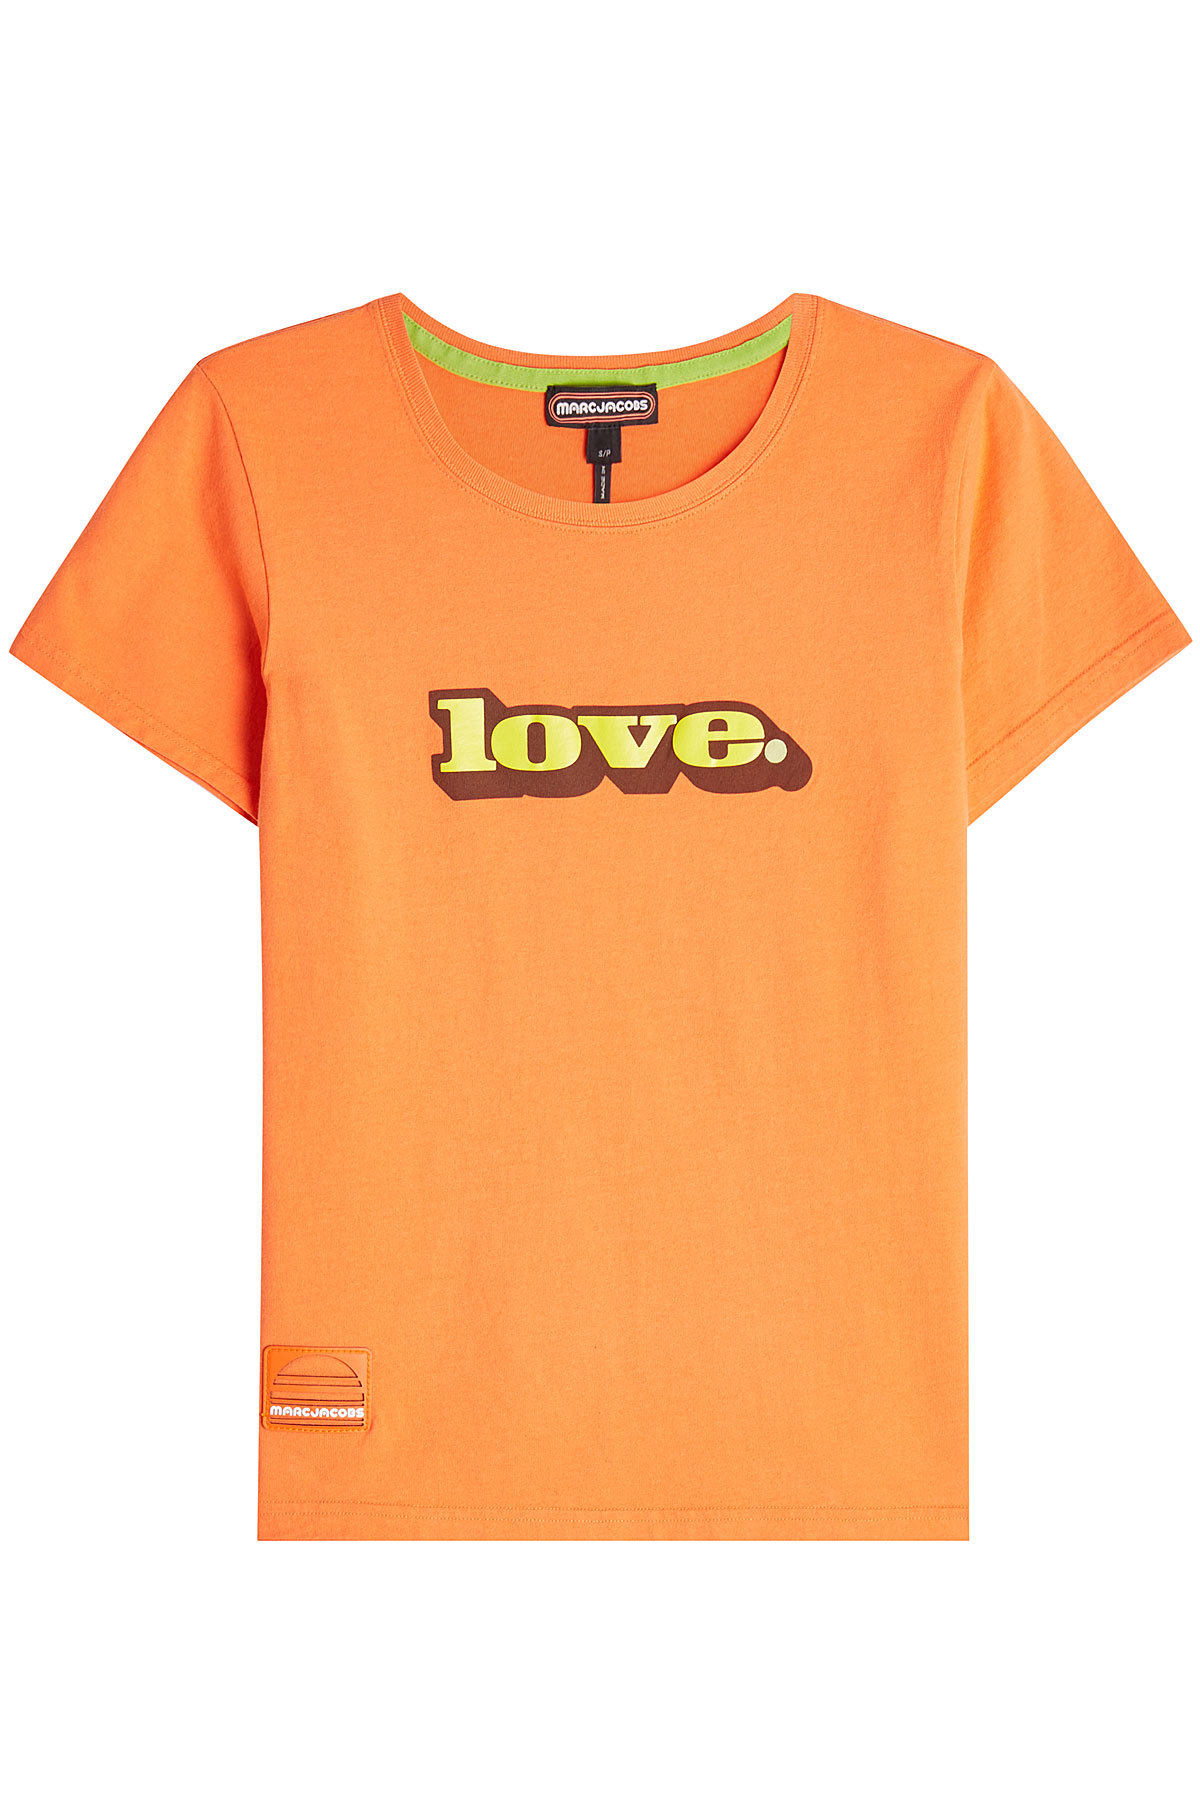 Marc Jacobs - Love Cotton T-Shirt